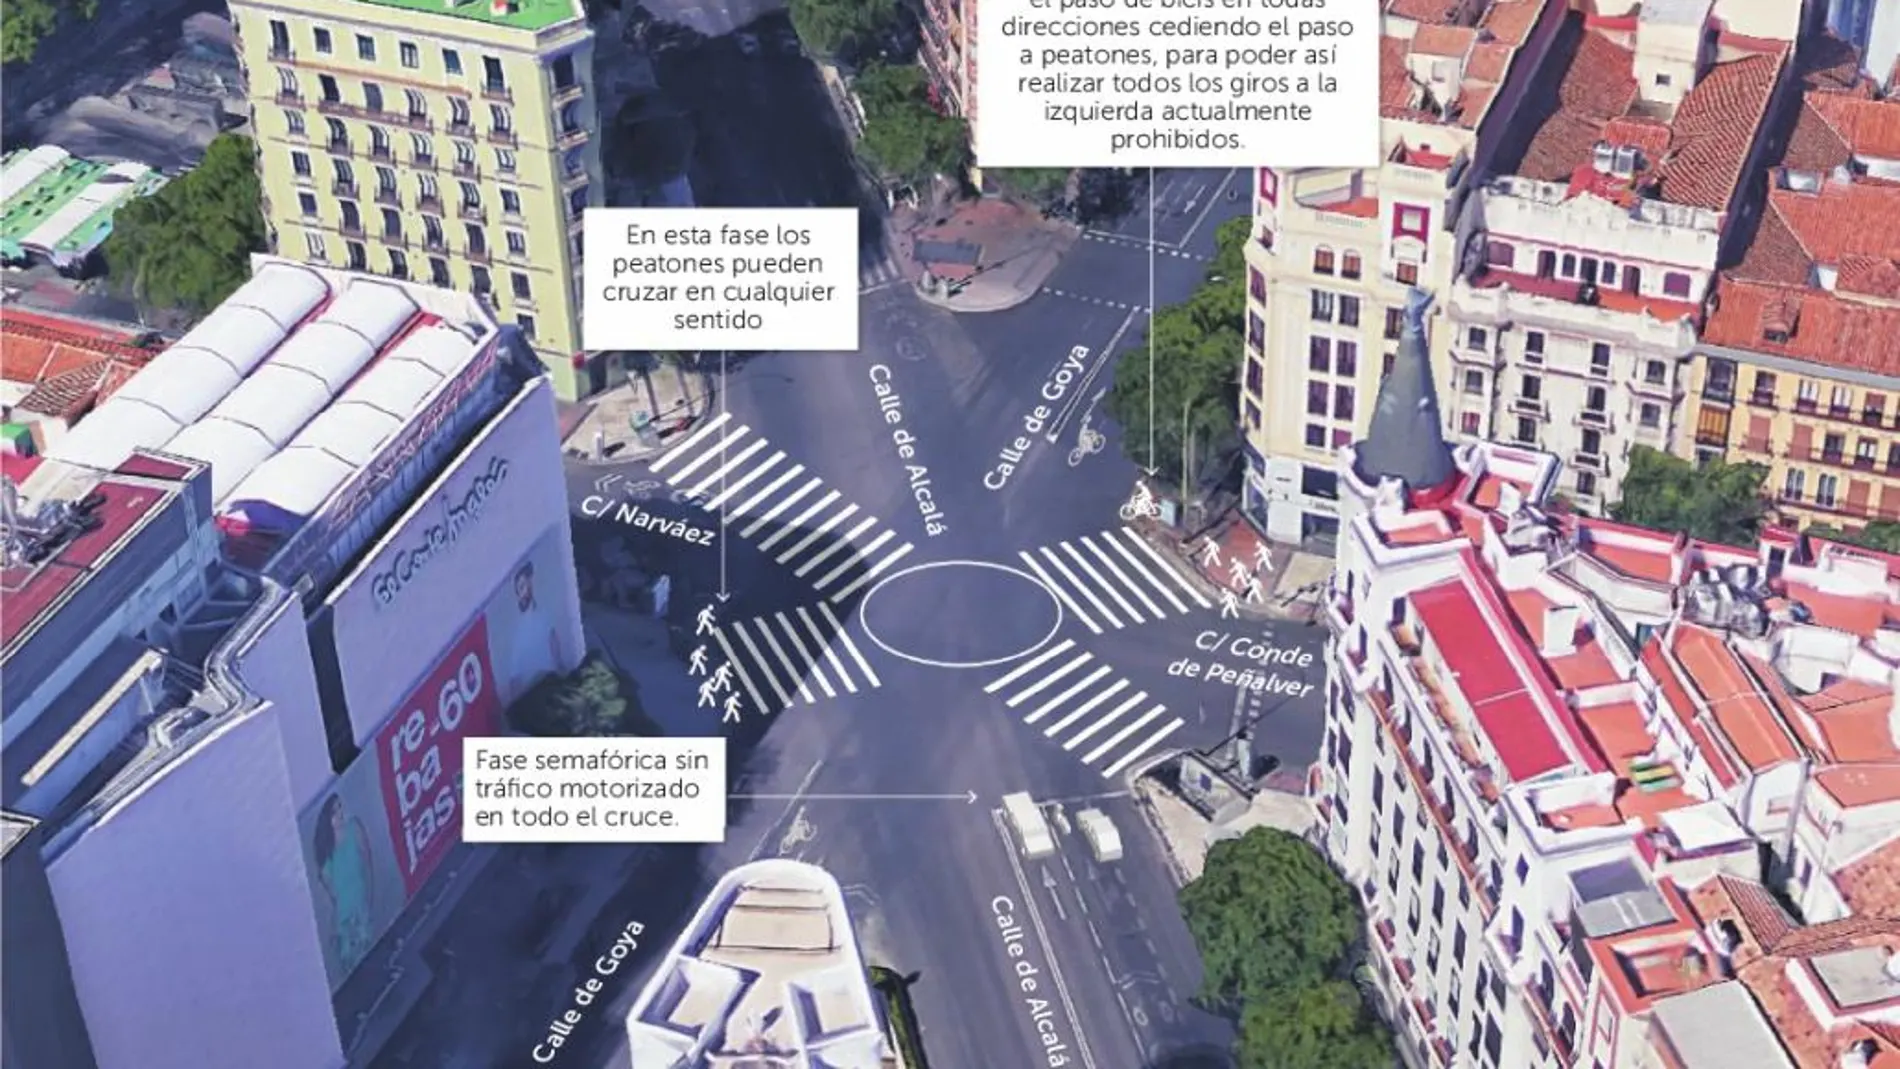 El paso de peatones en diagonal permitirá a los viandantes moverse por este cruce del distrito de Salamanca de una forma más rápida